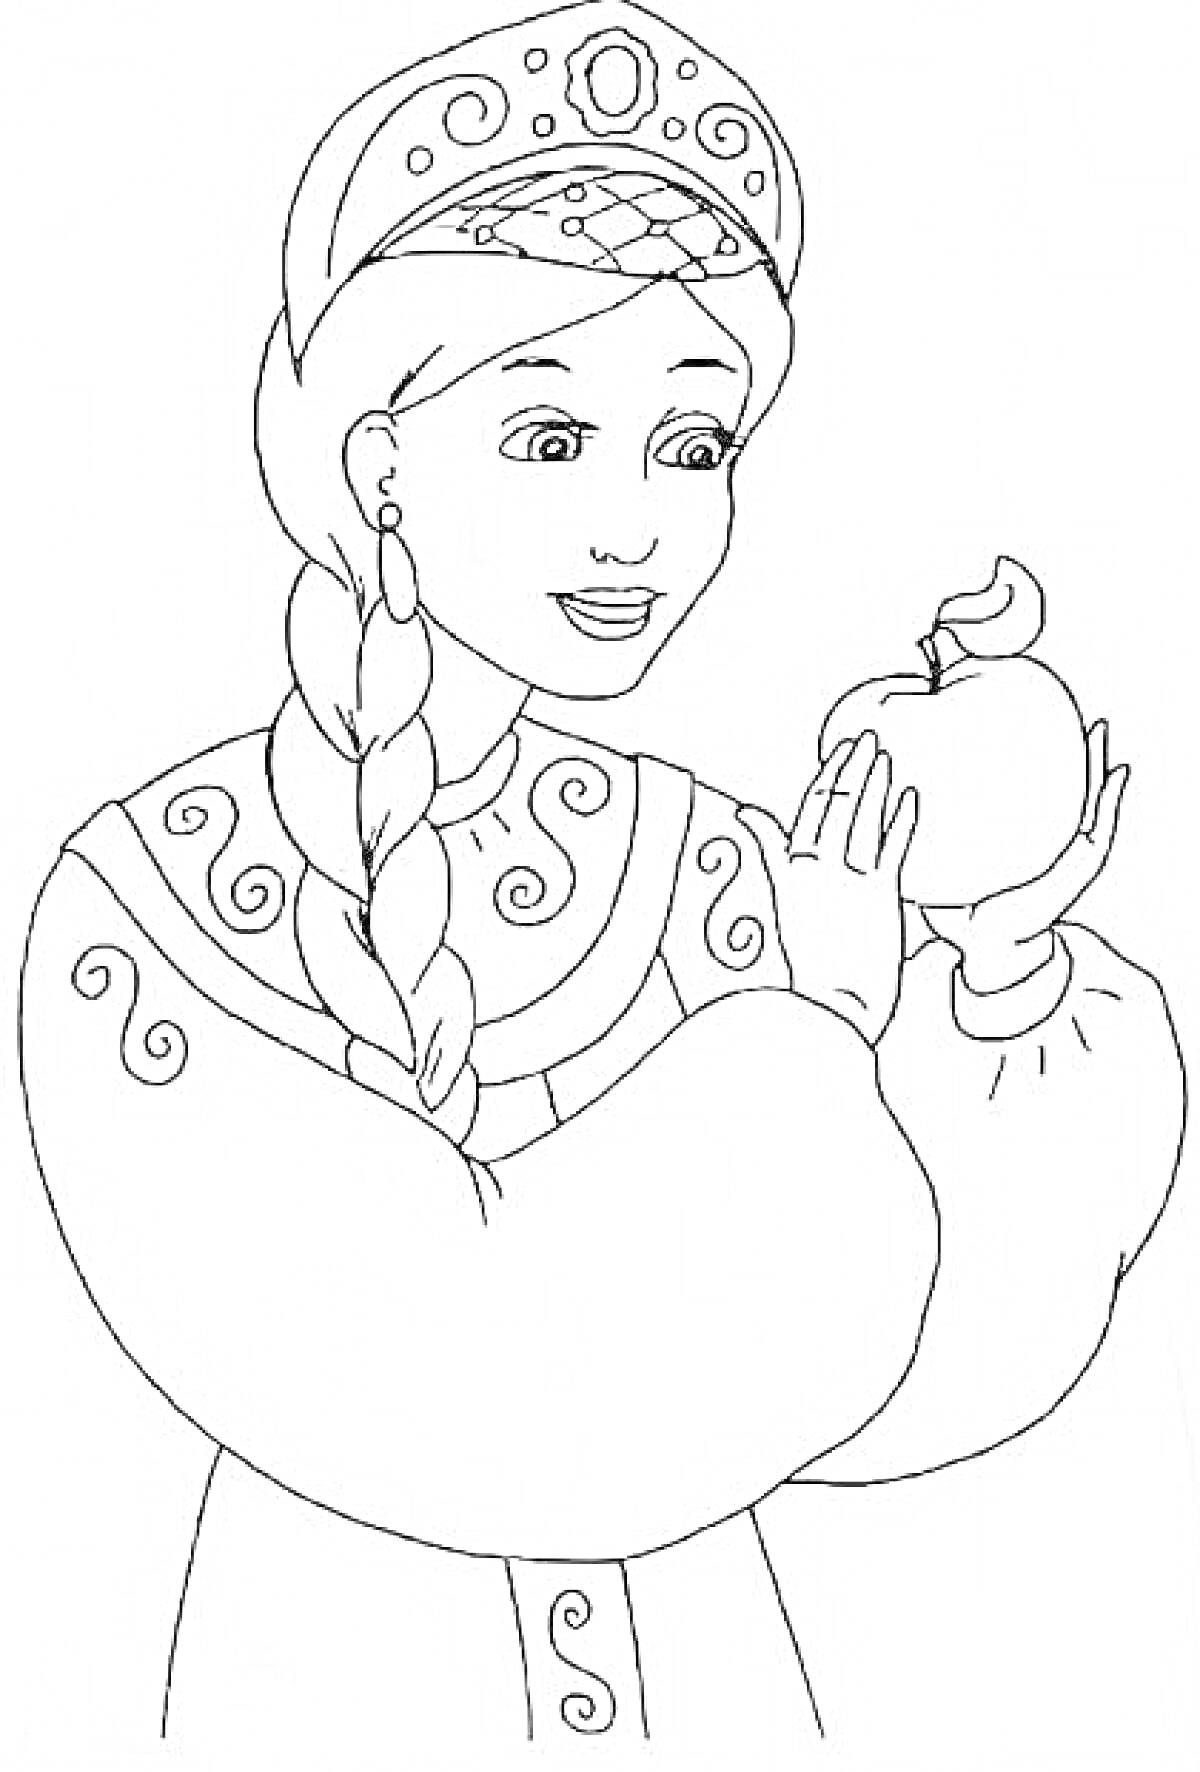 Раскраска Царевна с косой в кокошнике держит яблоко